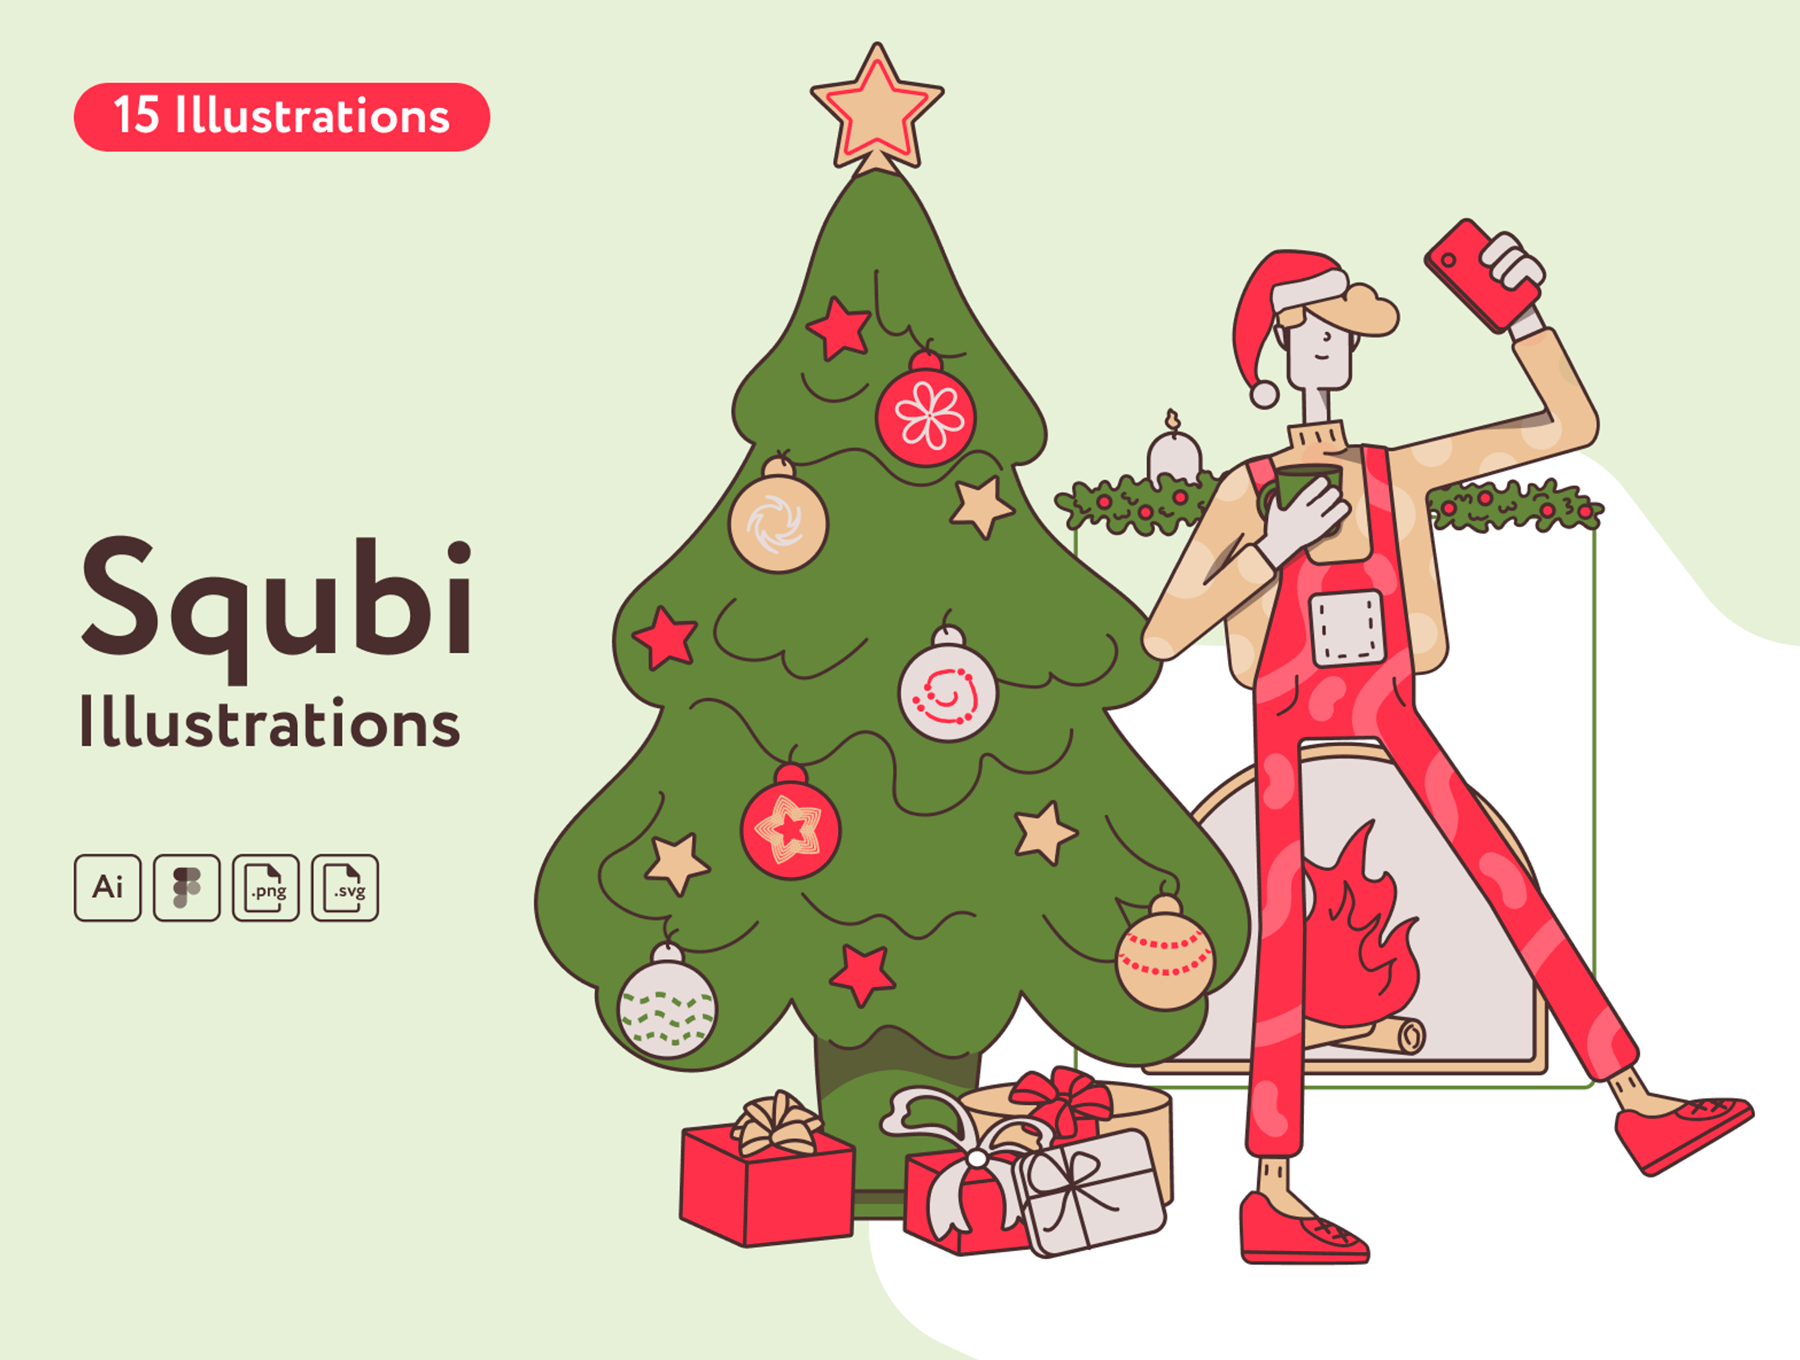 71 冬季圣诞节雪人常用矢量UI插图素材包 Squbi Illustrations 71